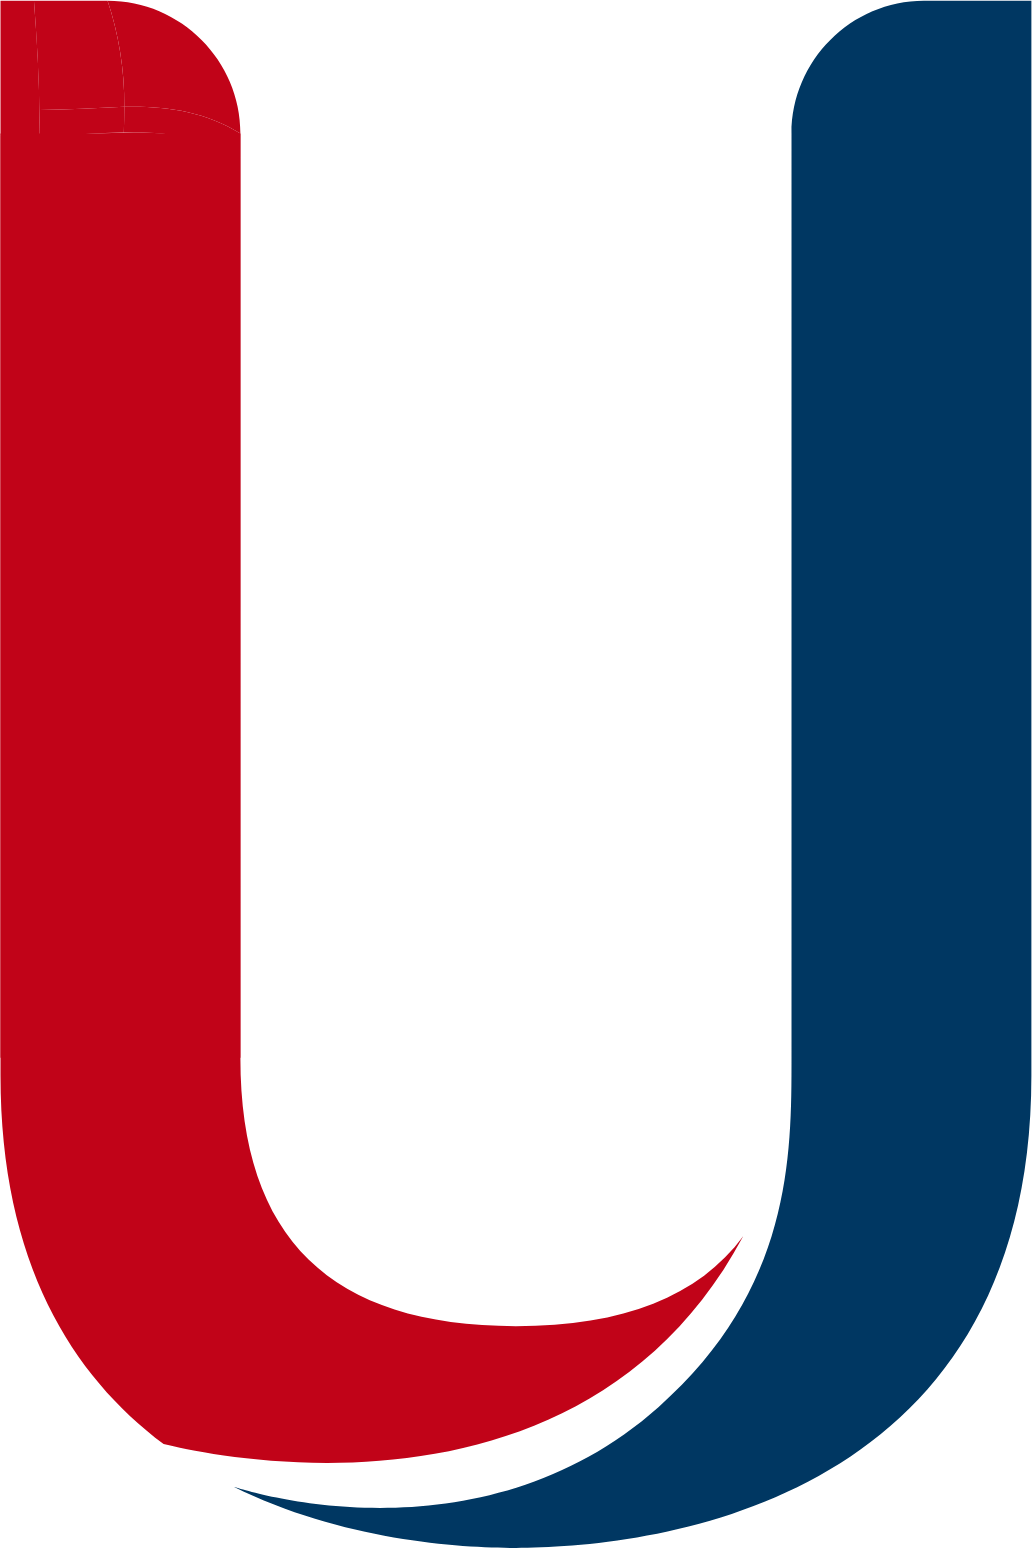 UnipolSai Assicurazioni logo (PNG transparent)